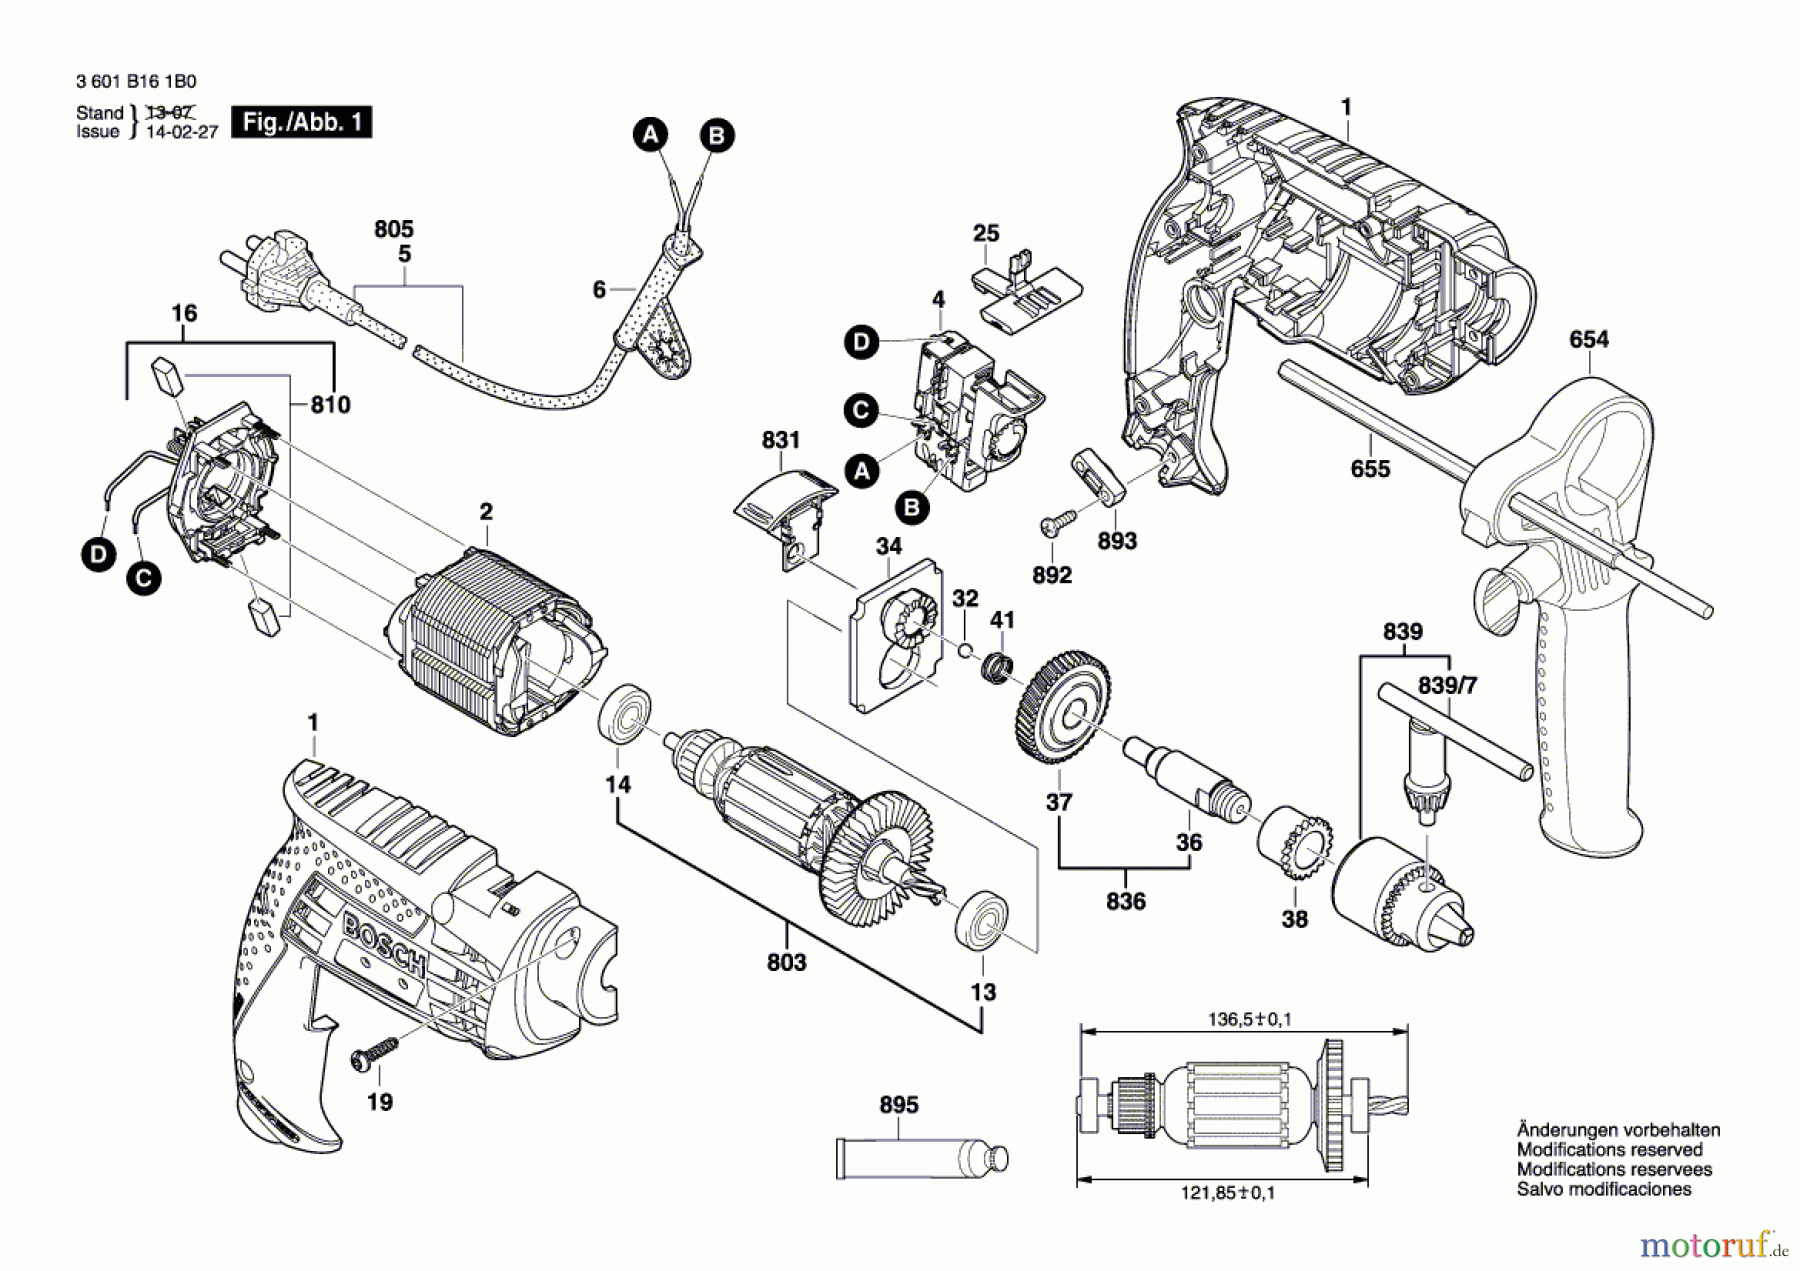  Bosch Werkzeug Schlagbohrmaschine GSB 10 RE Seite 1